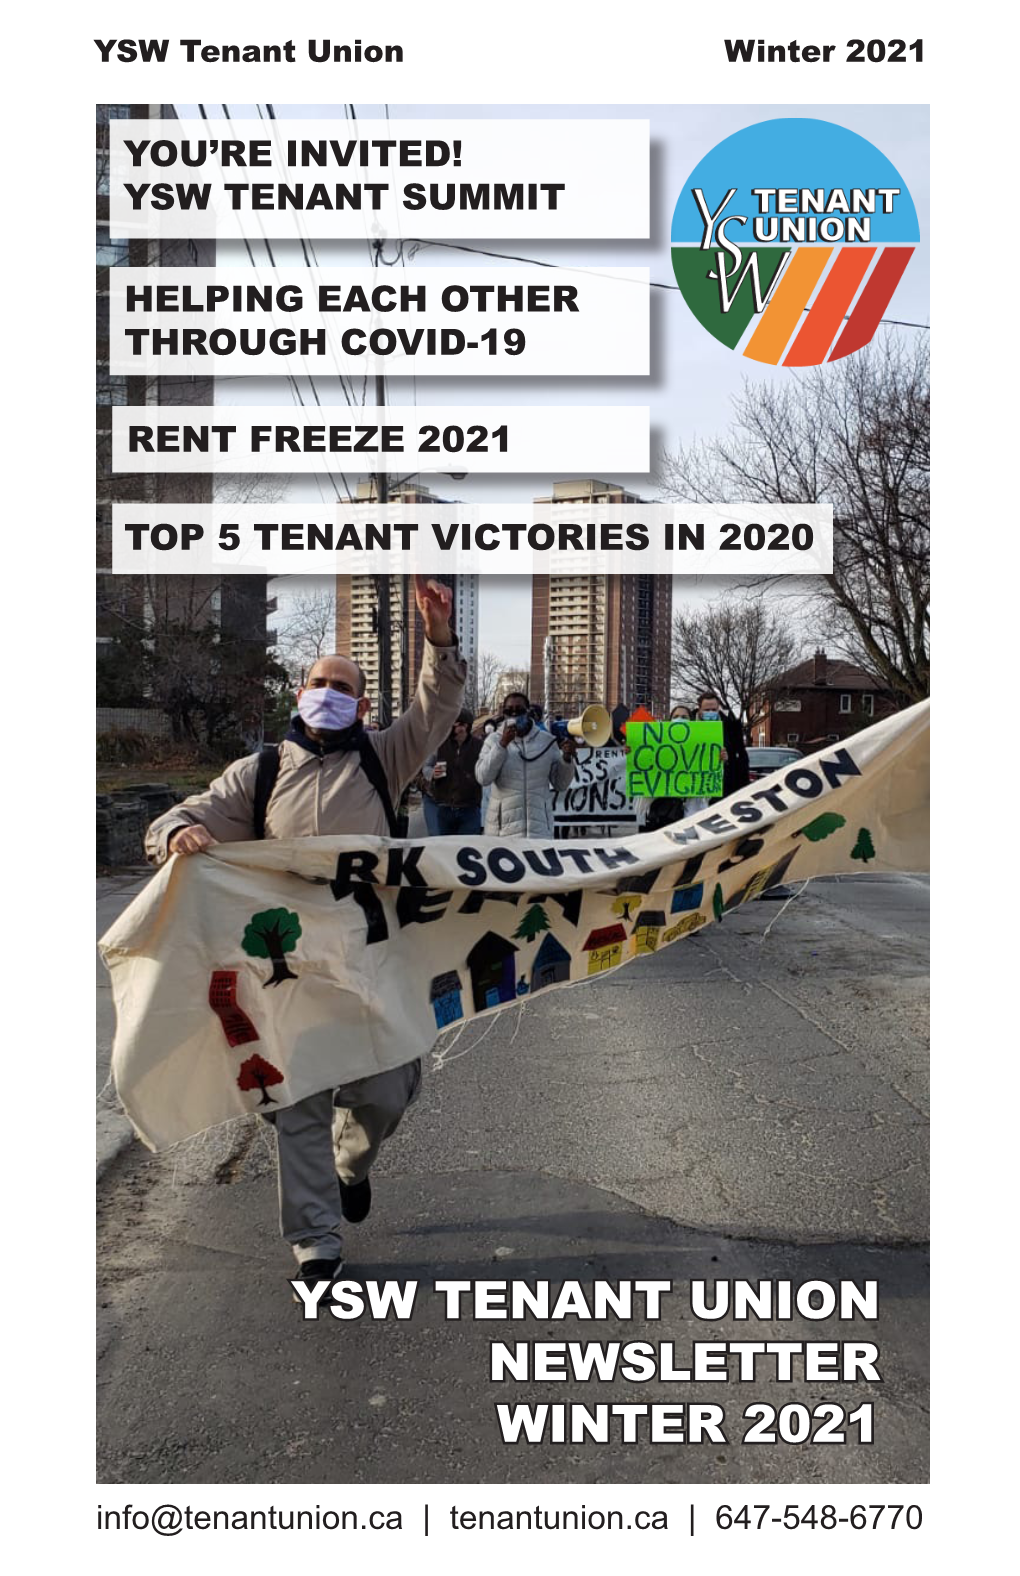 YSW TENANT UNION NEWSLETTER WINTER 2021 Info@Tenantunion.Ca | Tenantunion.Ca | 647-548-6770 YSW Tenant Union Winter 2021 YSW Tenant Union Winter 2021